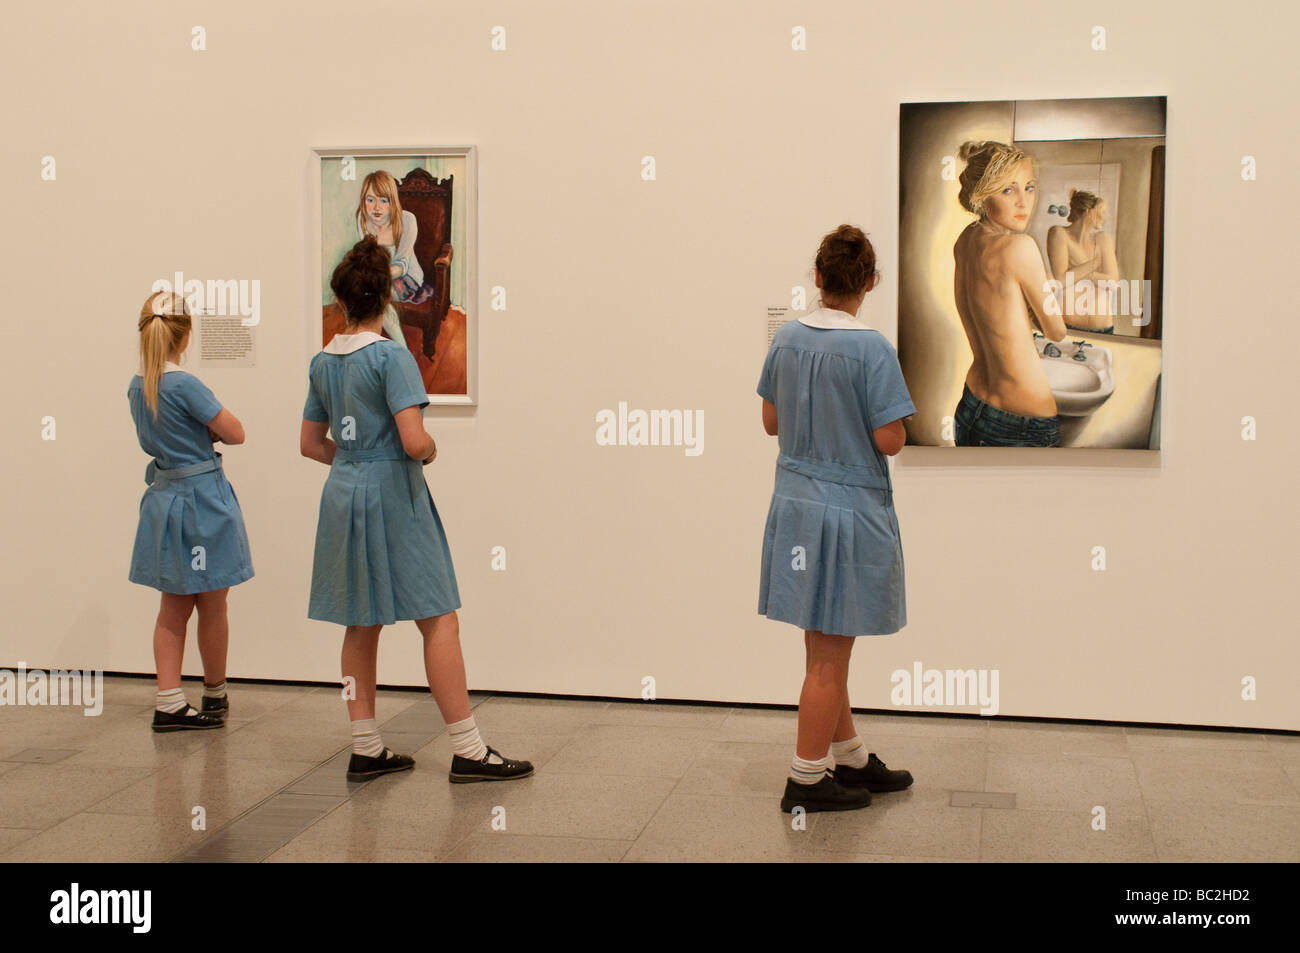 National Gallery of Victoria, les écolières tableaux de jeunes femmes, Melbourne, Victoria, Australie Banque D'Images